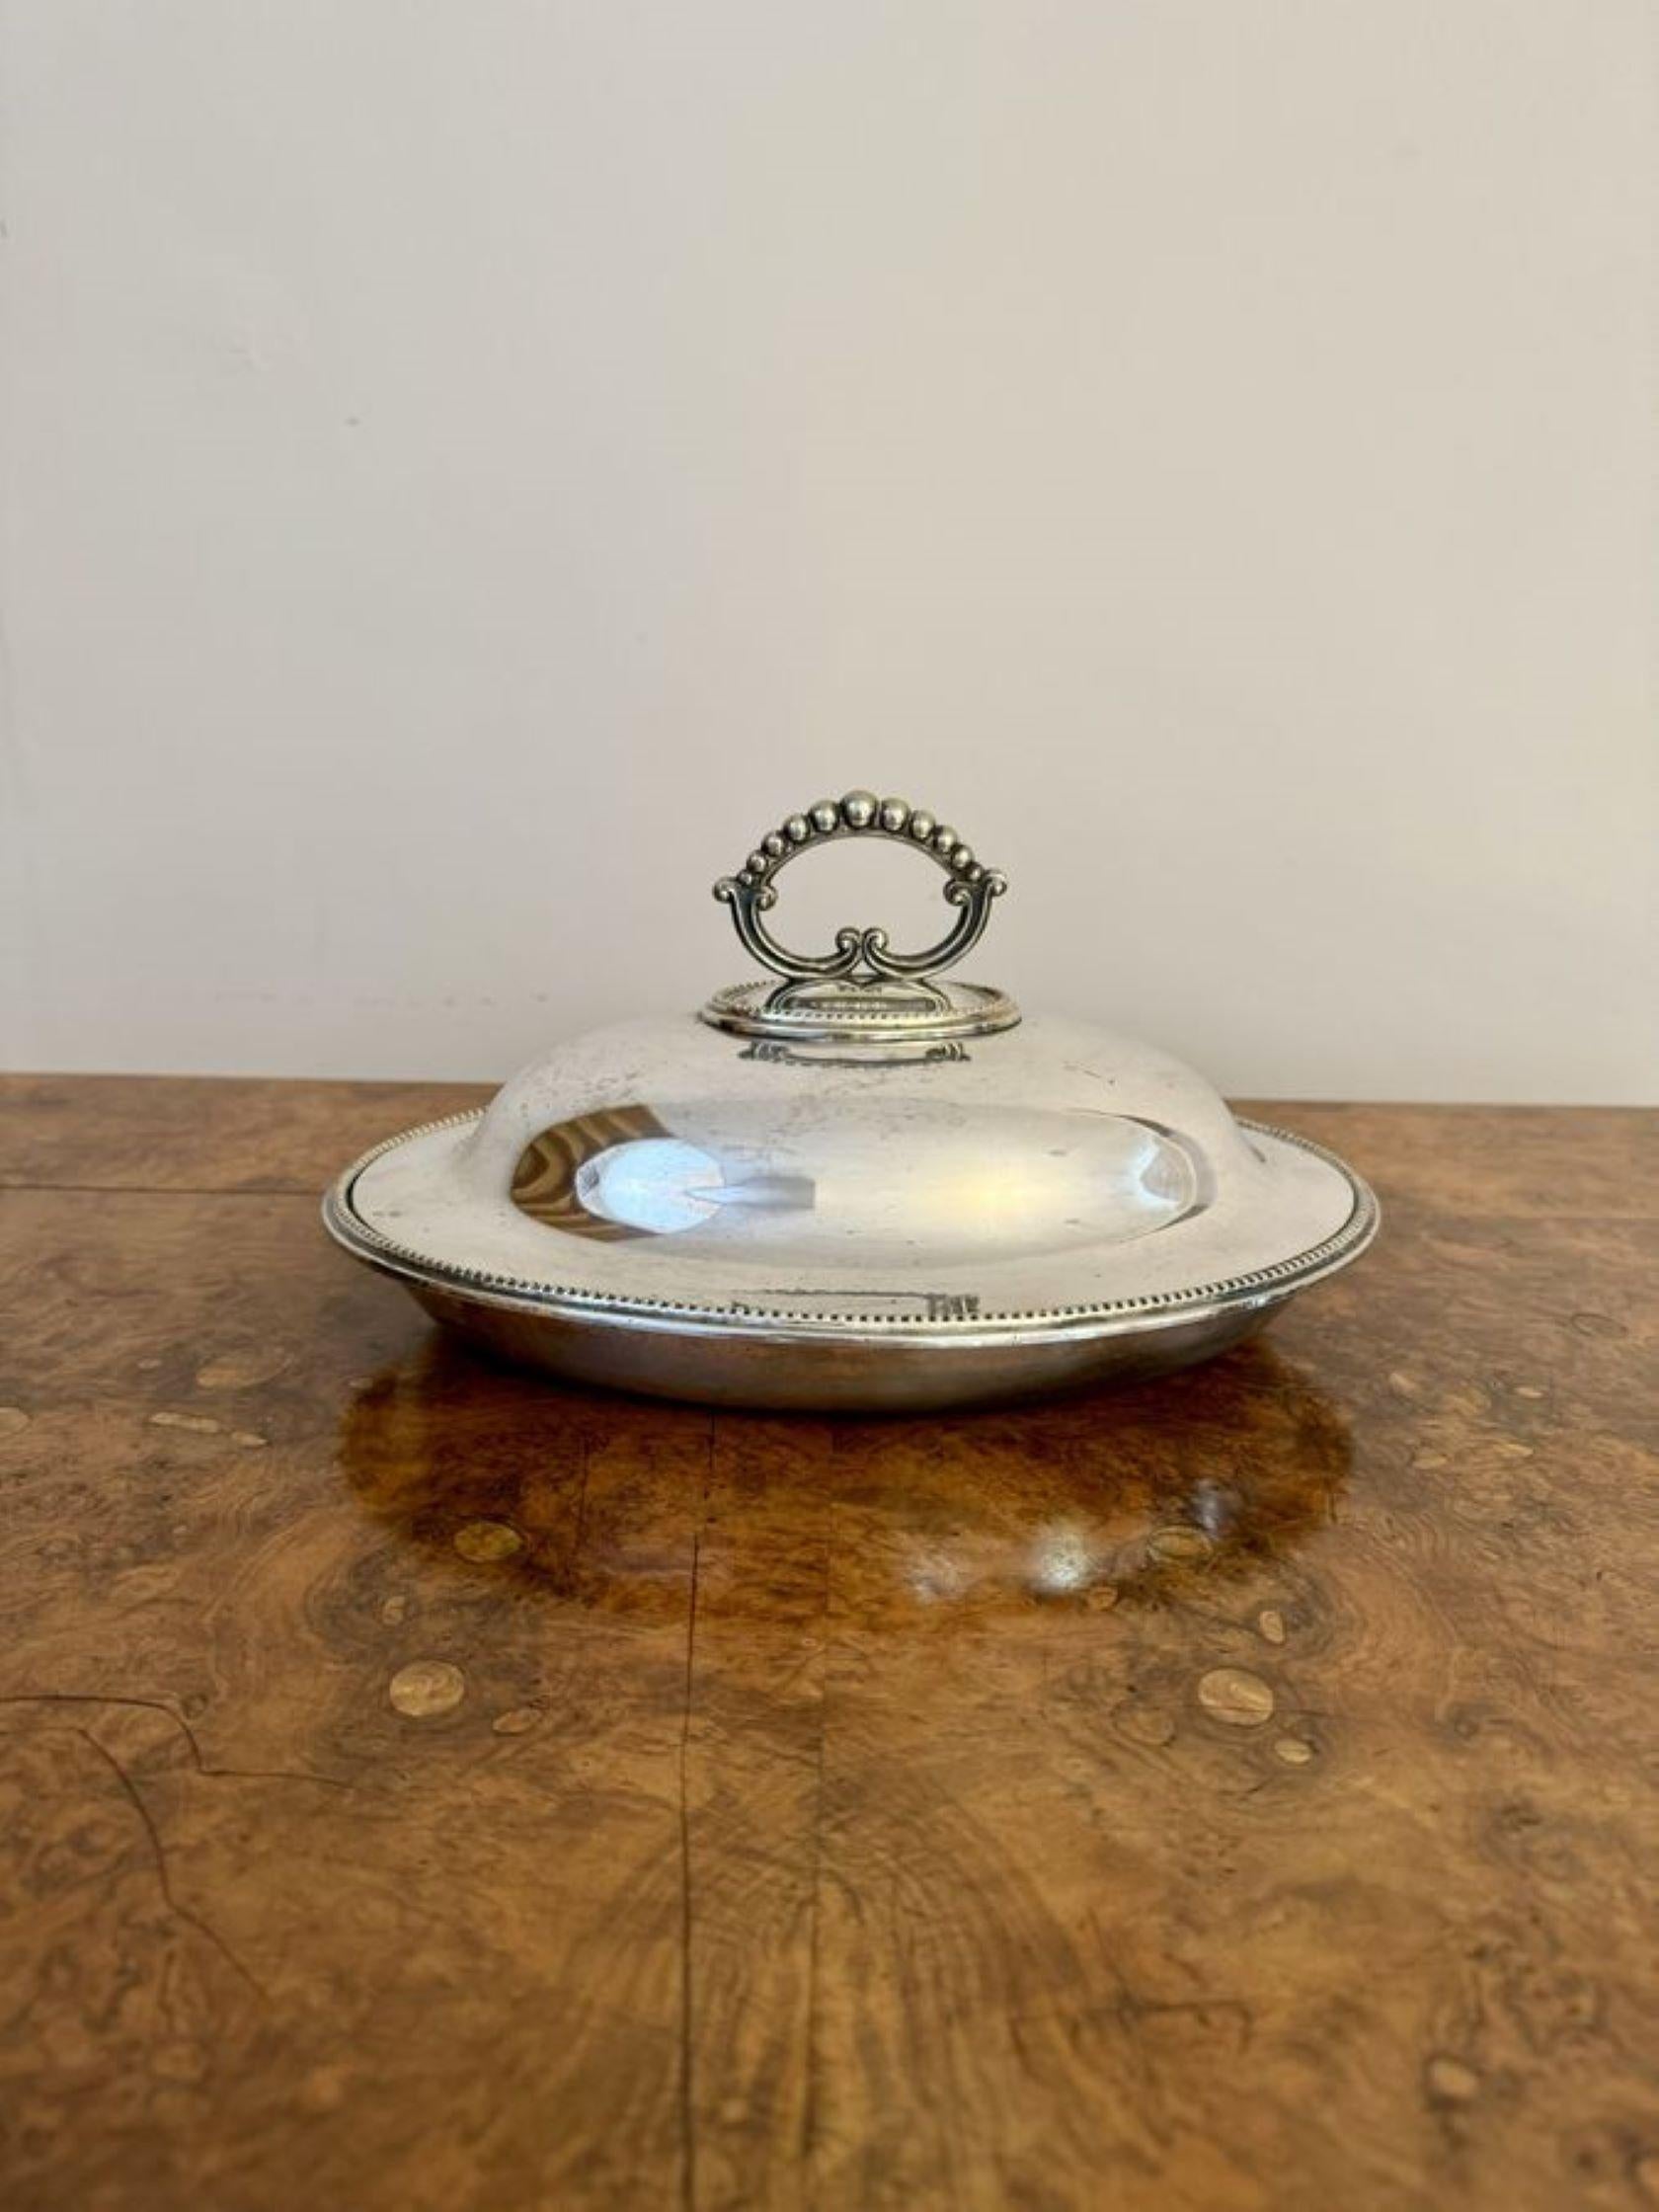 Merveilleux plat à entrées en métal argenté de l'époque édouardienne, avec un couvercle amovible et une poignée ornée en métal argenté sur le dessus.

D. 1900